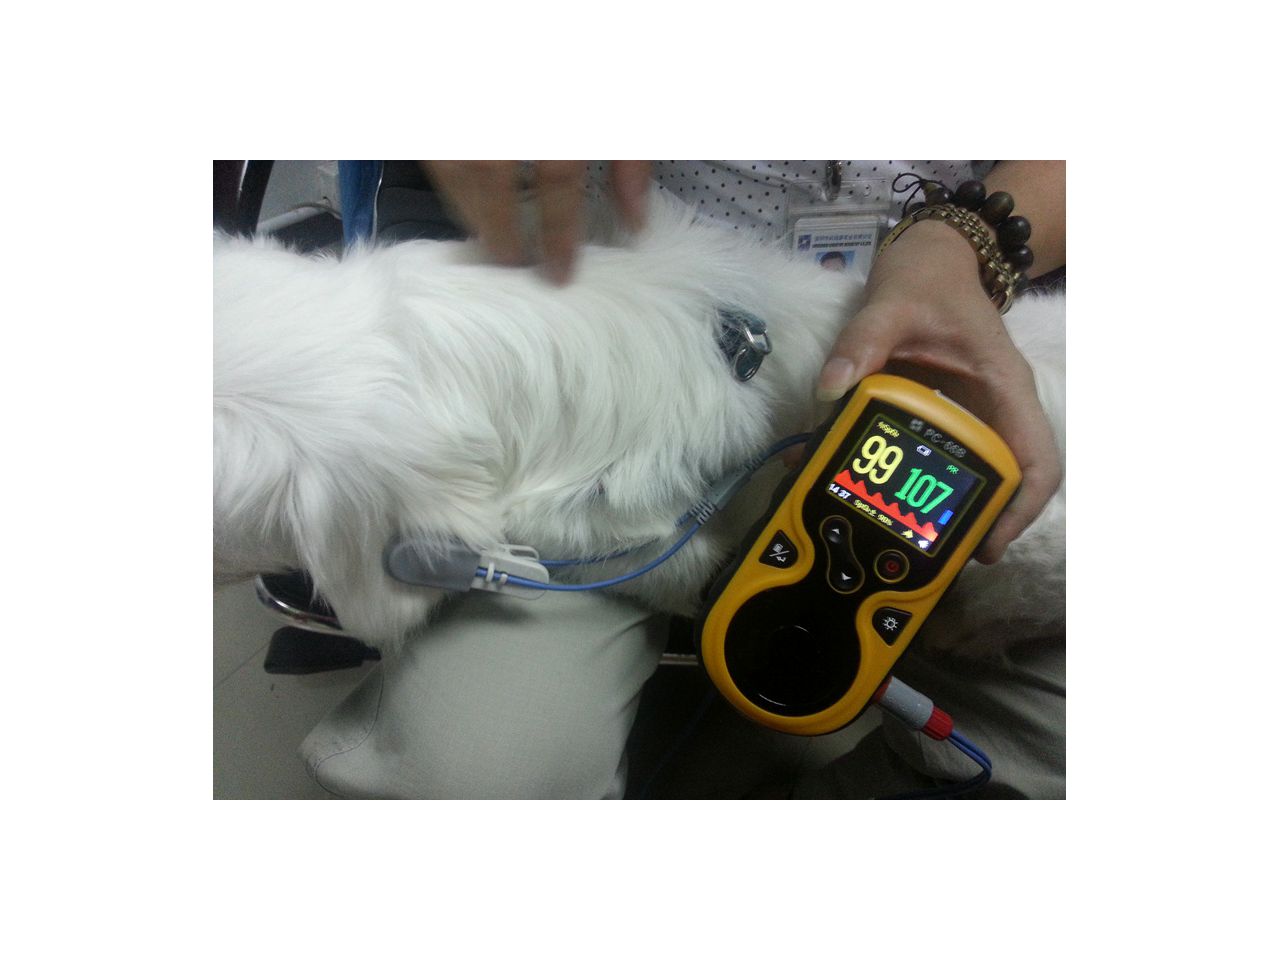 oxy-100-veterinarski-pulsni-oksimetar--34343_2.jpg